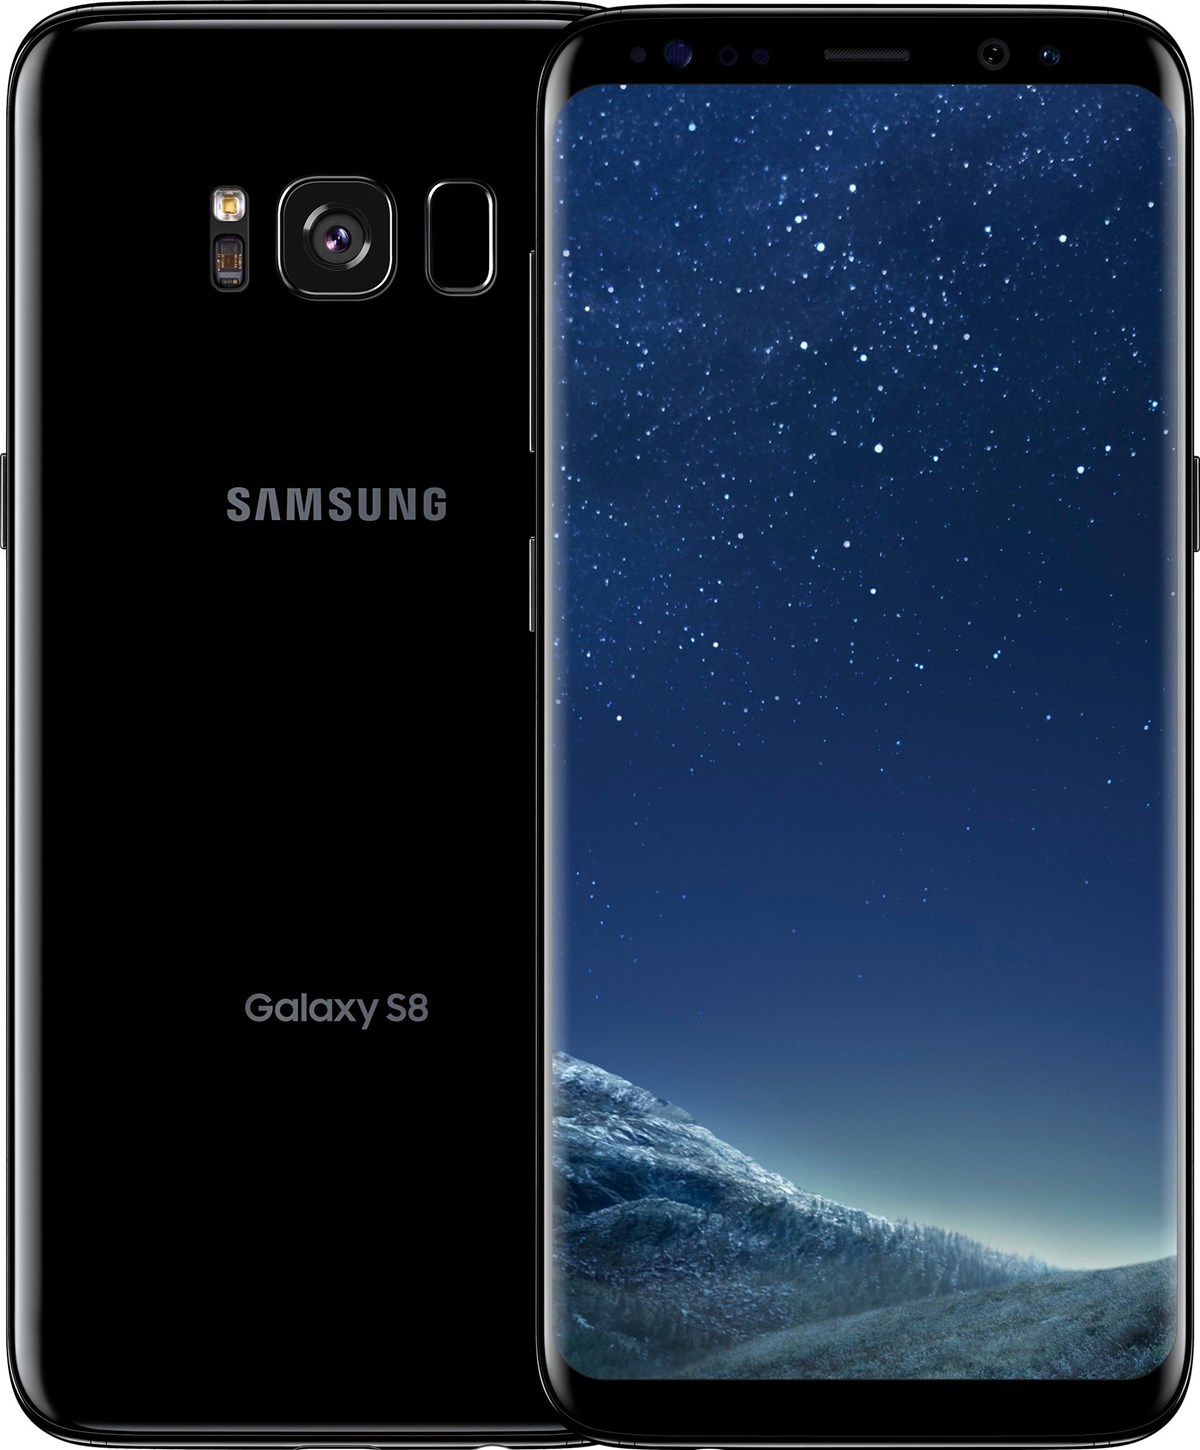 Har du en brugt Galaxy S8 liggende i skuffen, eller vil du bare skifte mobil nu, så kan du hente i omegnen af 3.000 kroner på Galaxy S8